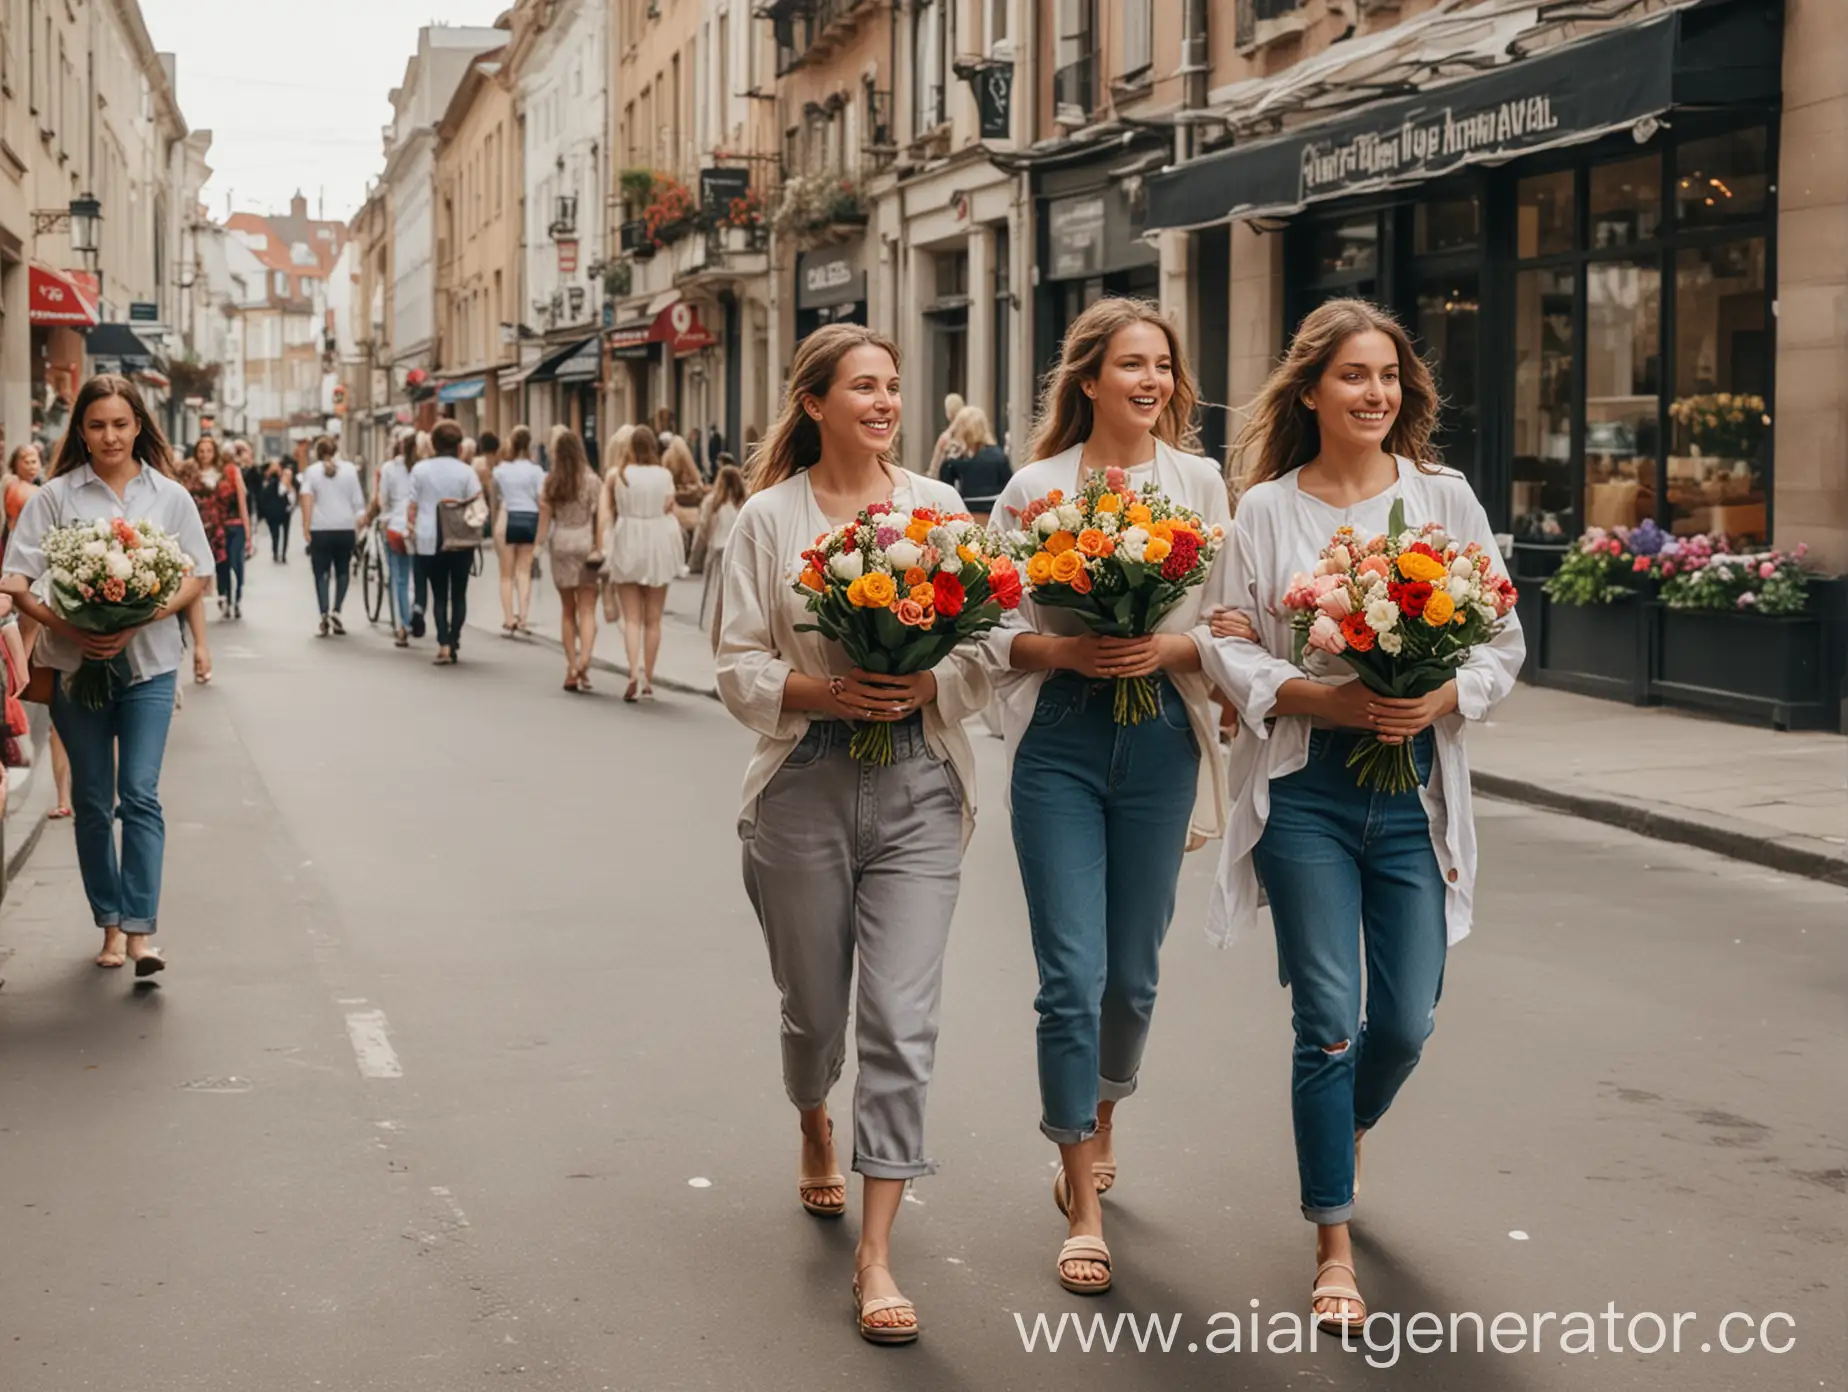 Женщины идут по улице с букетами цветов в руках